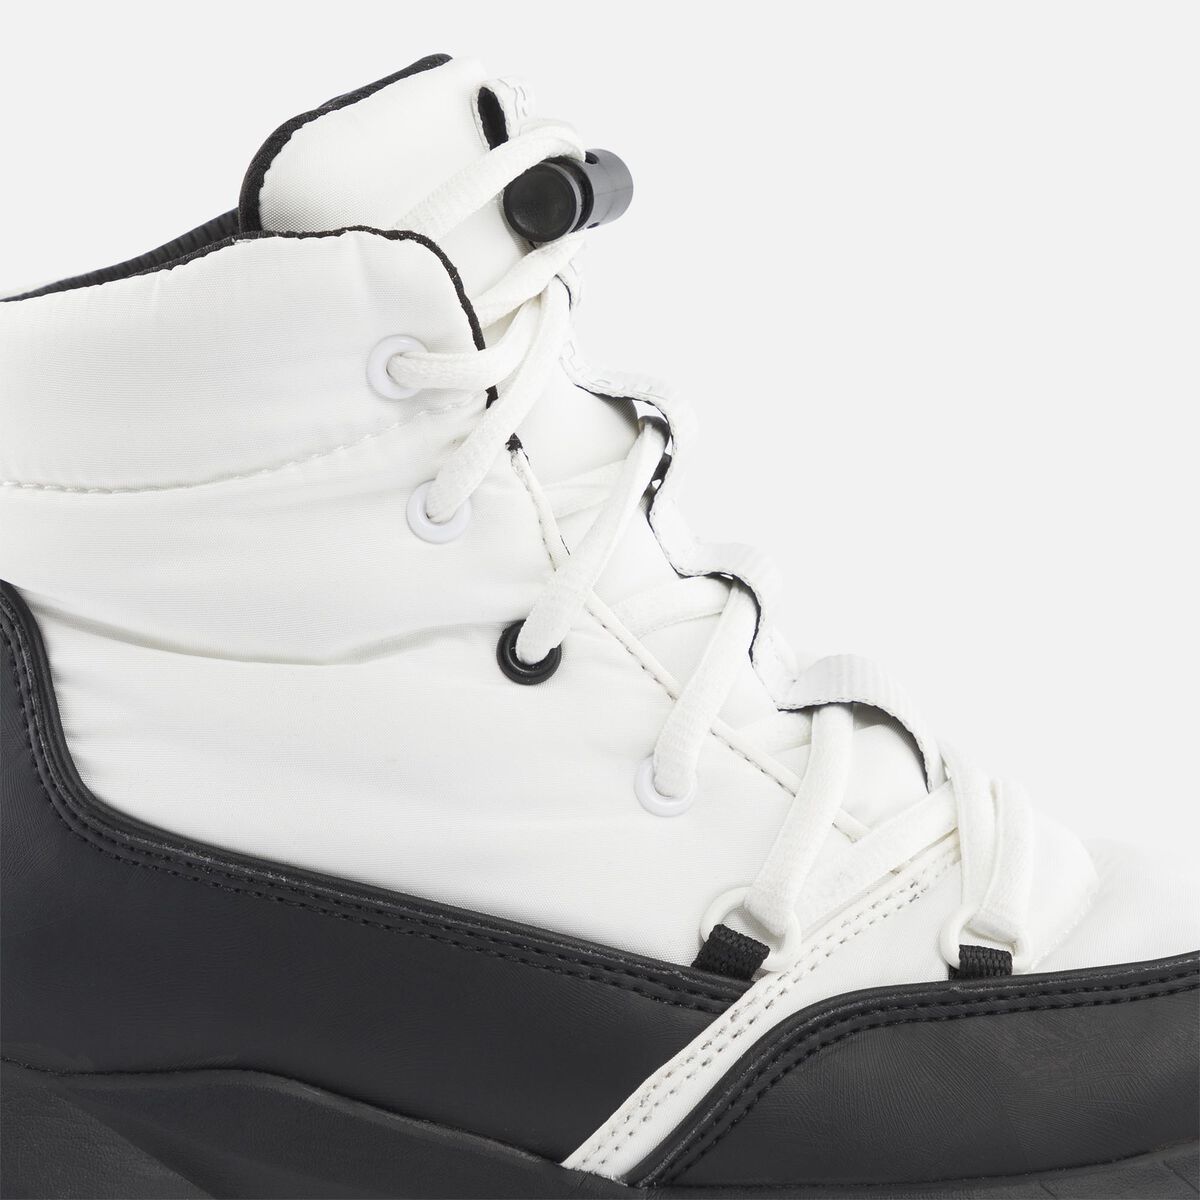 Podium White-Black Schuhe